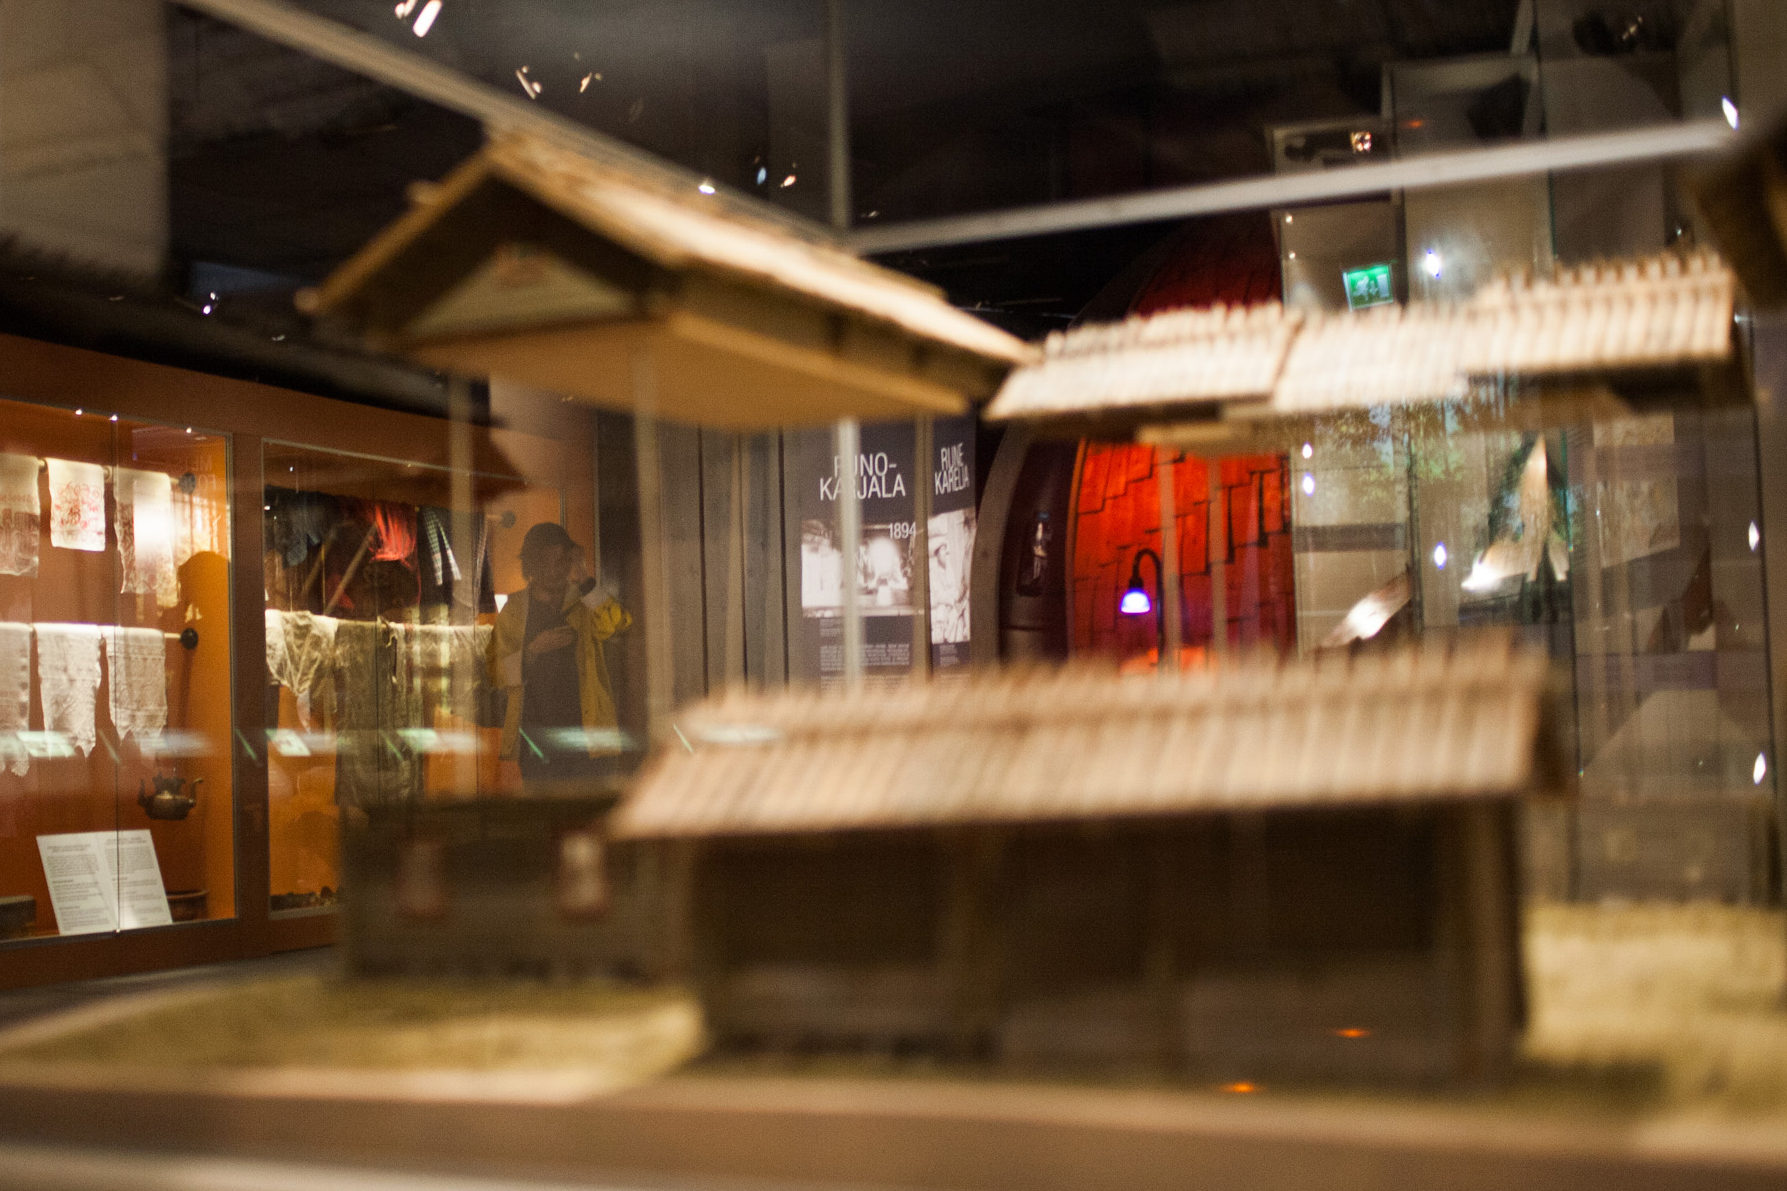 Pohjois-Karjalan museon näyttelytila, jossa kansallispukuja sekä pienoismalleja bomban pihasta